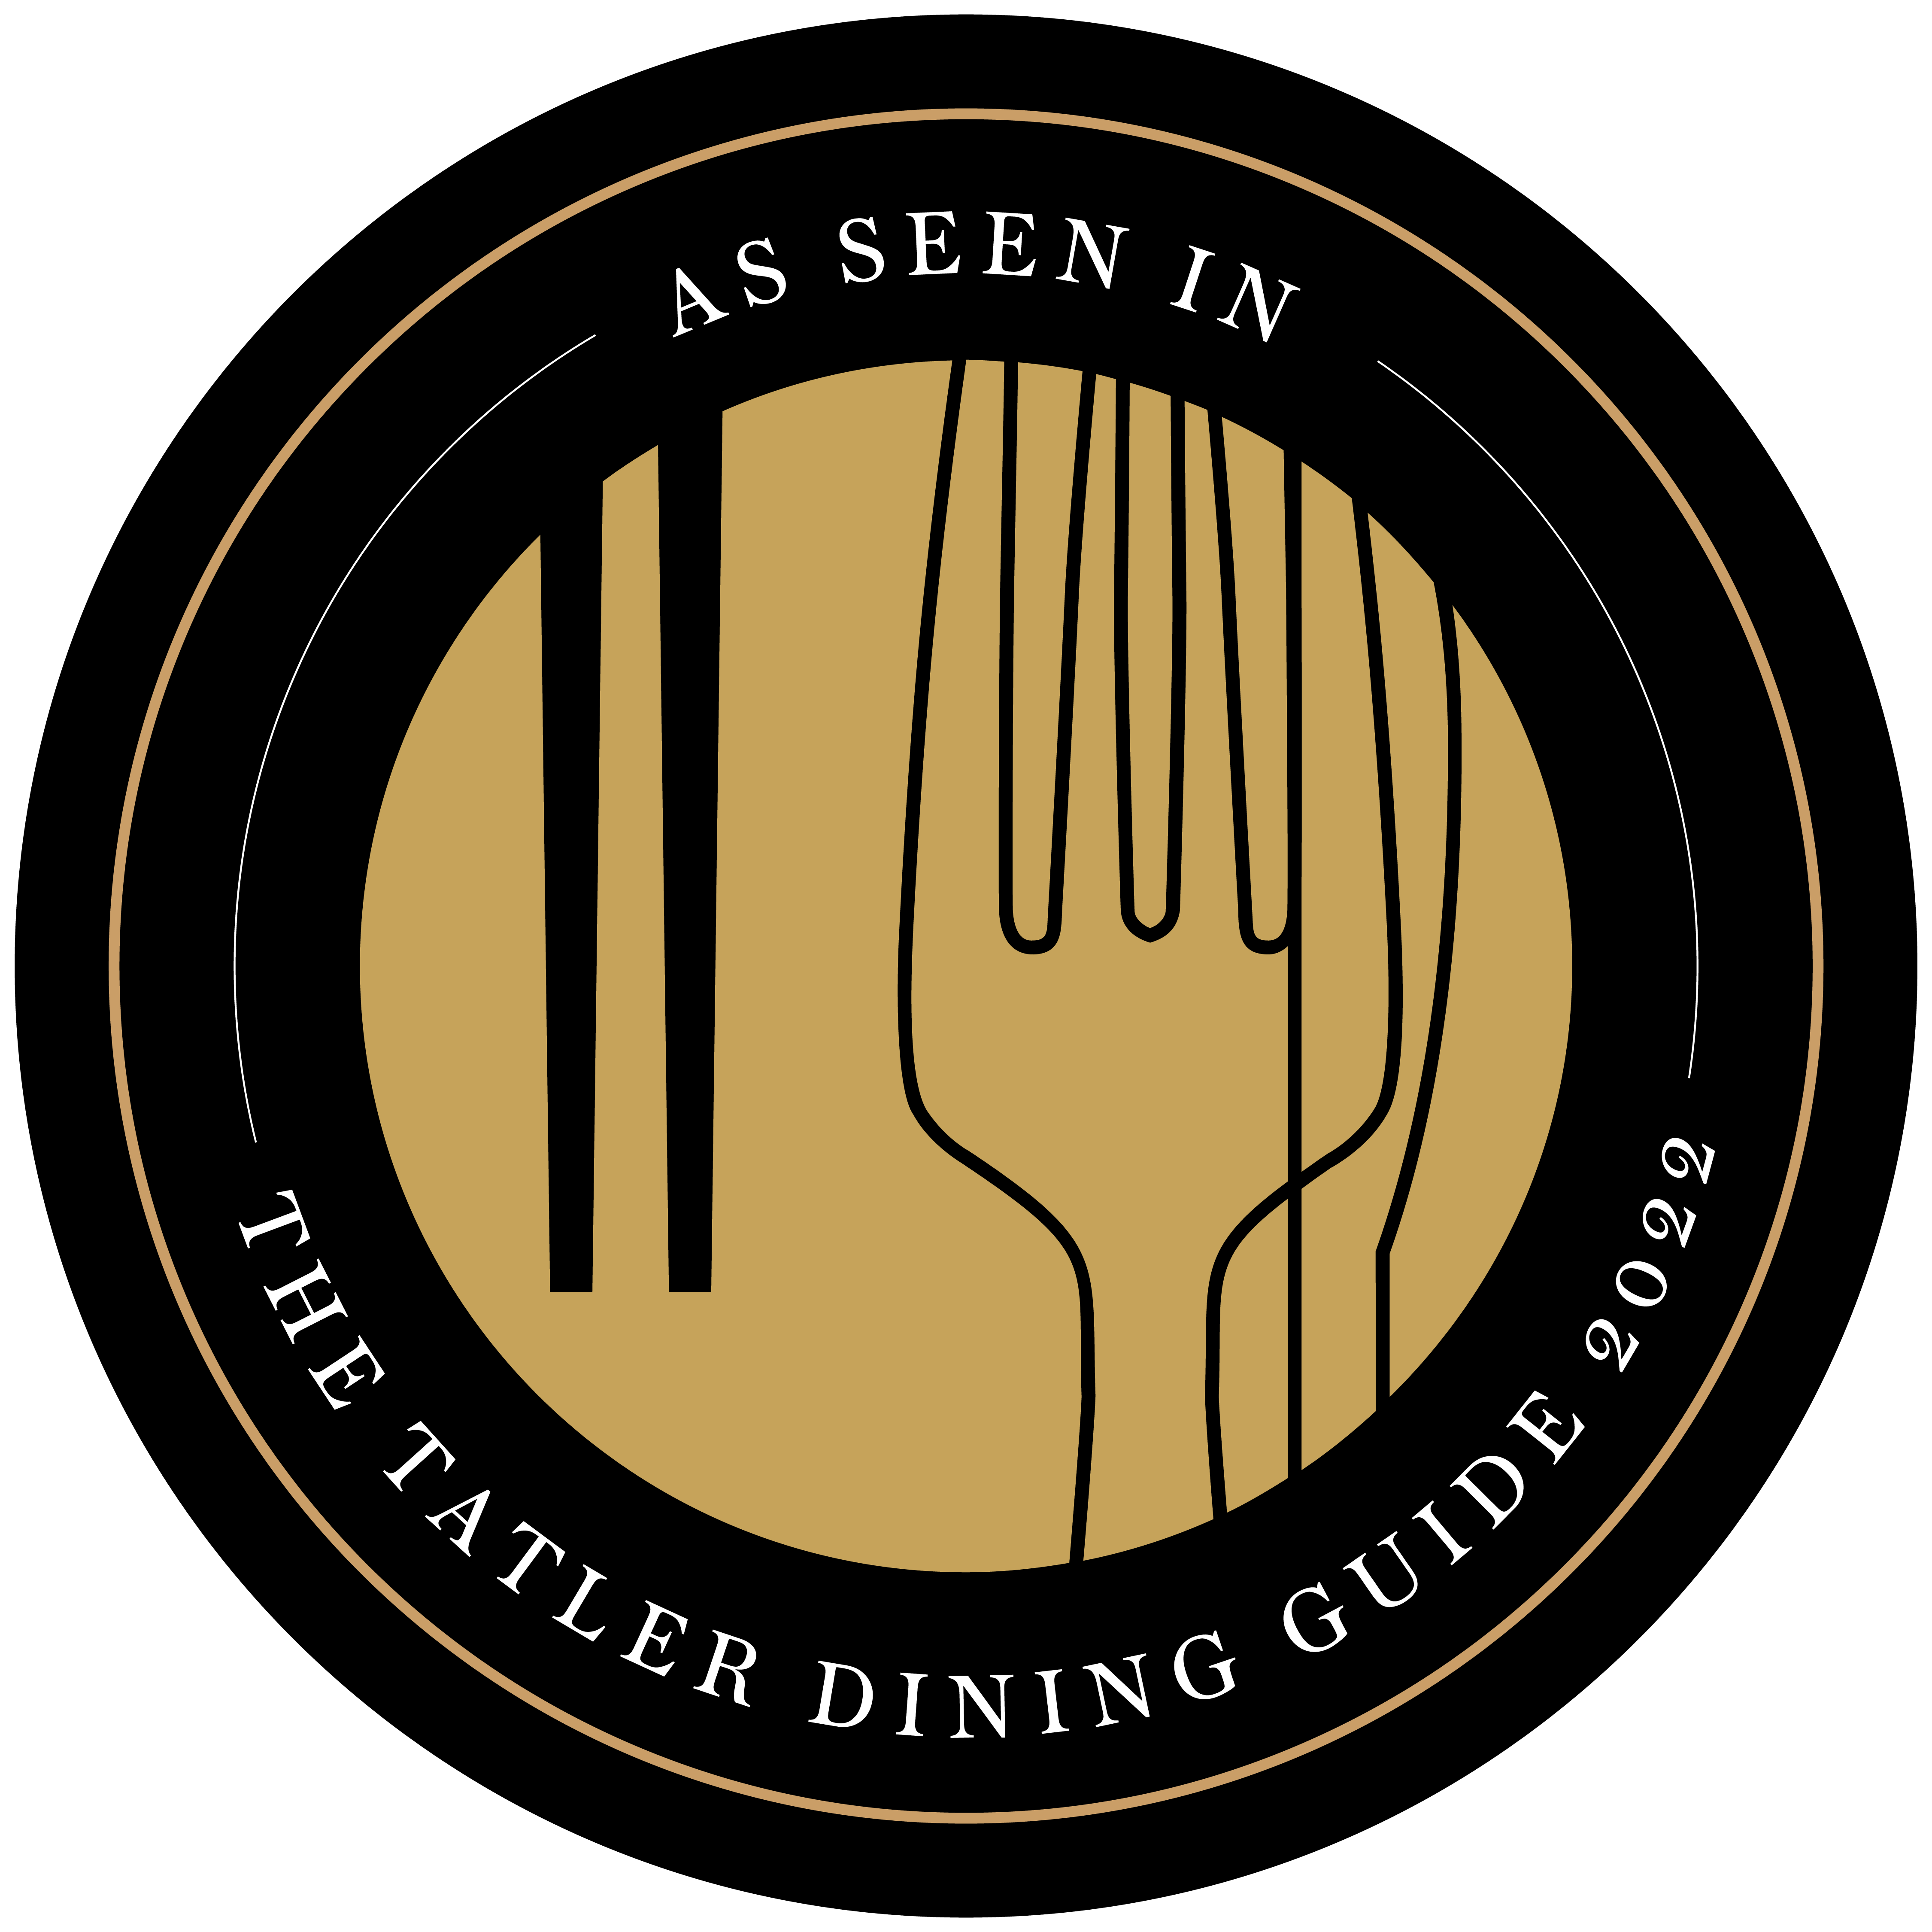 Masuk dalam Tatler Dining Guide 2022